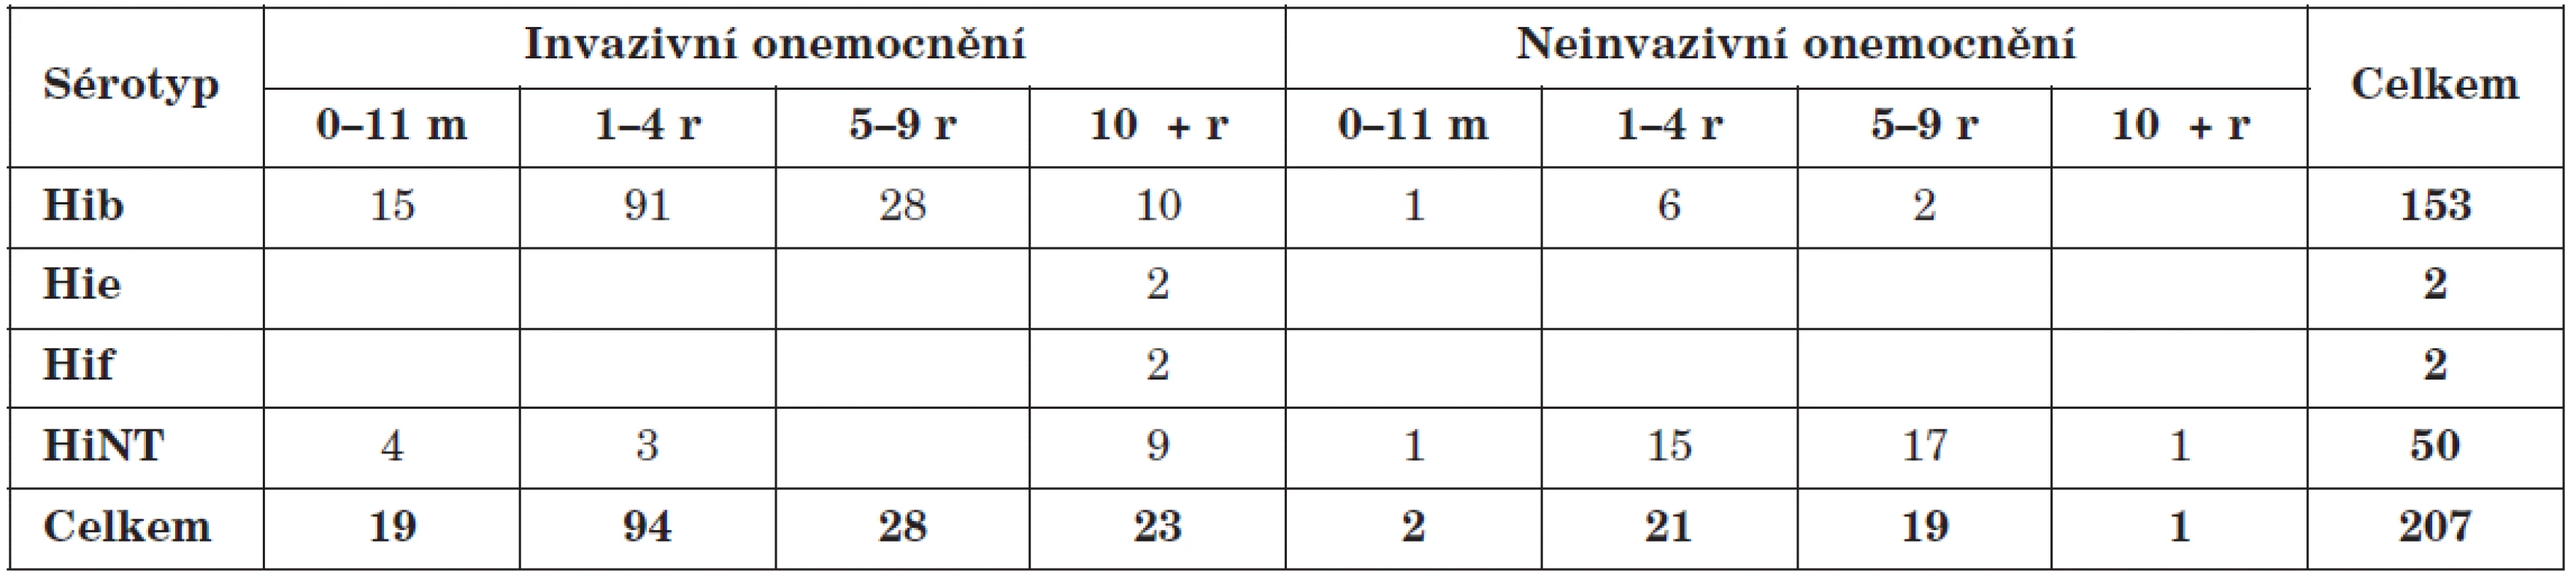 Soubor izolátů H. influenzae vybraný k MLST charakterizaci, Česká republika, 2001-2009
Table 1. H. influenzae isolates selected for MLST characterization, Czech Republic, 2001–2009